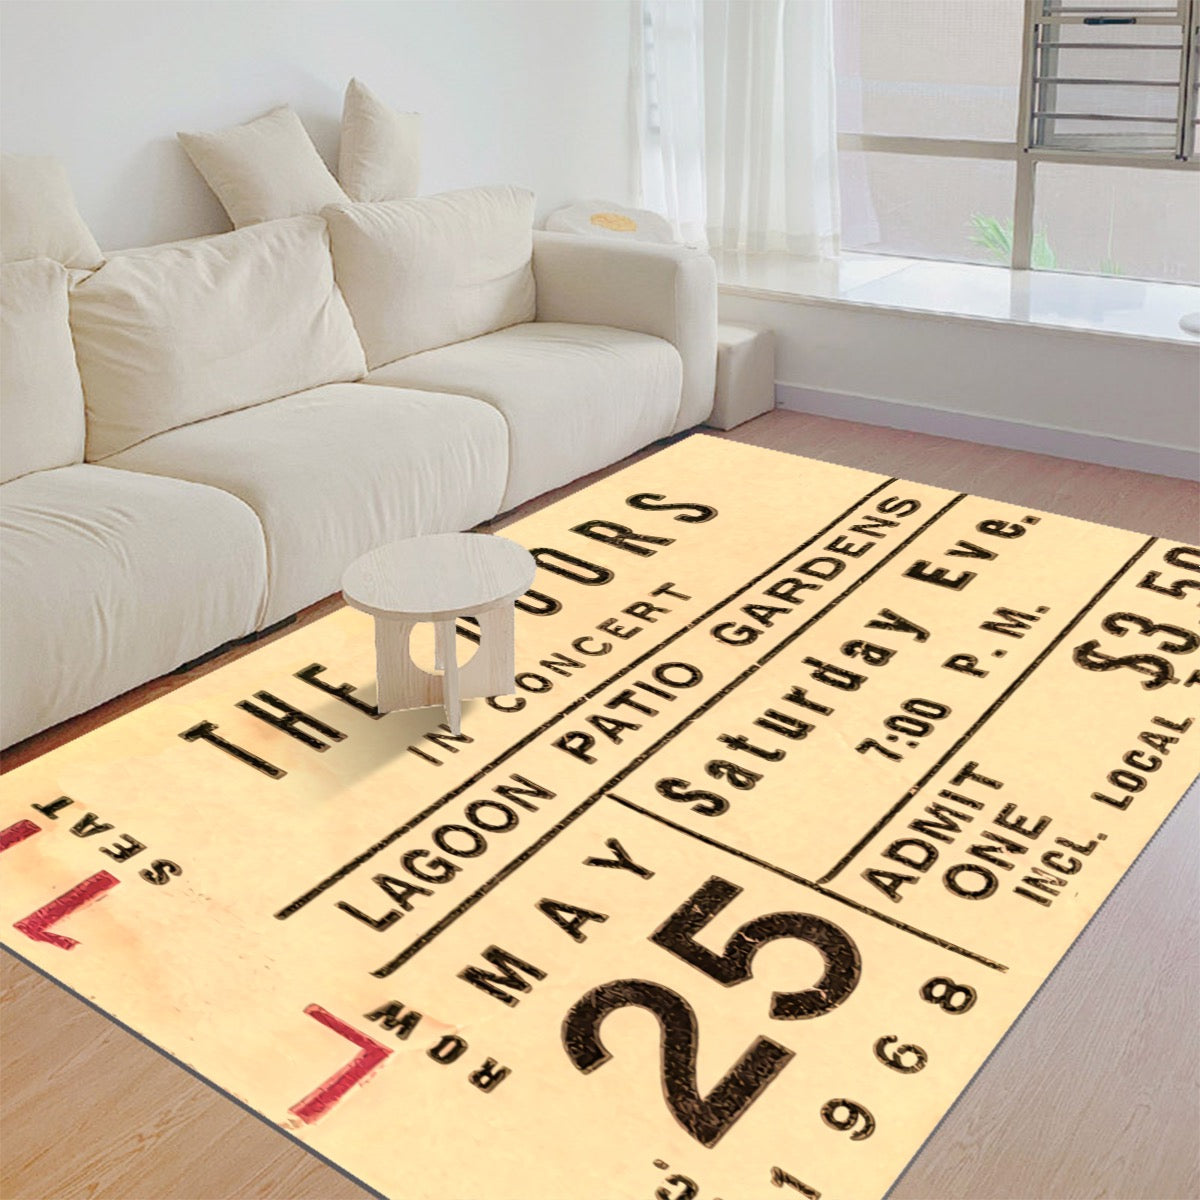 The Doors Original Concert Ticket Living Room Floor Mat - Posterify